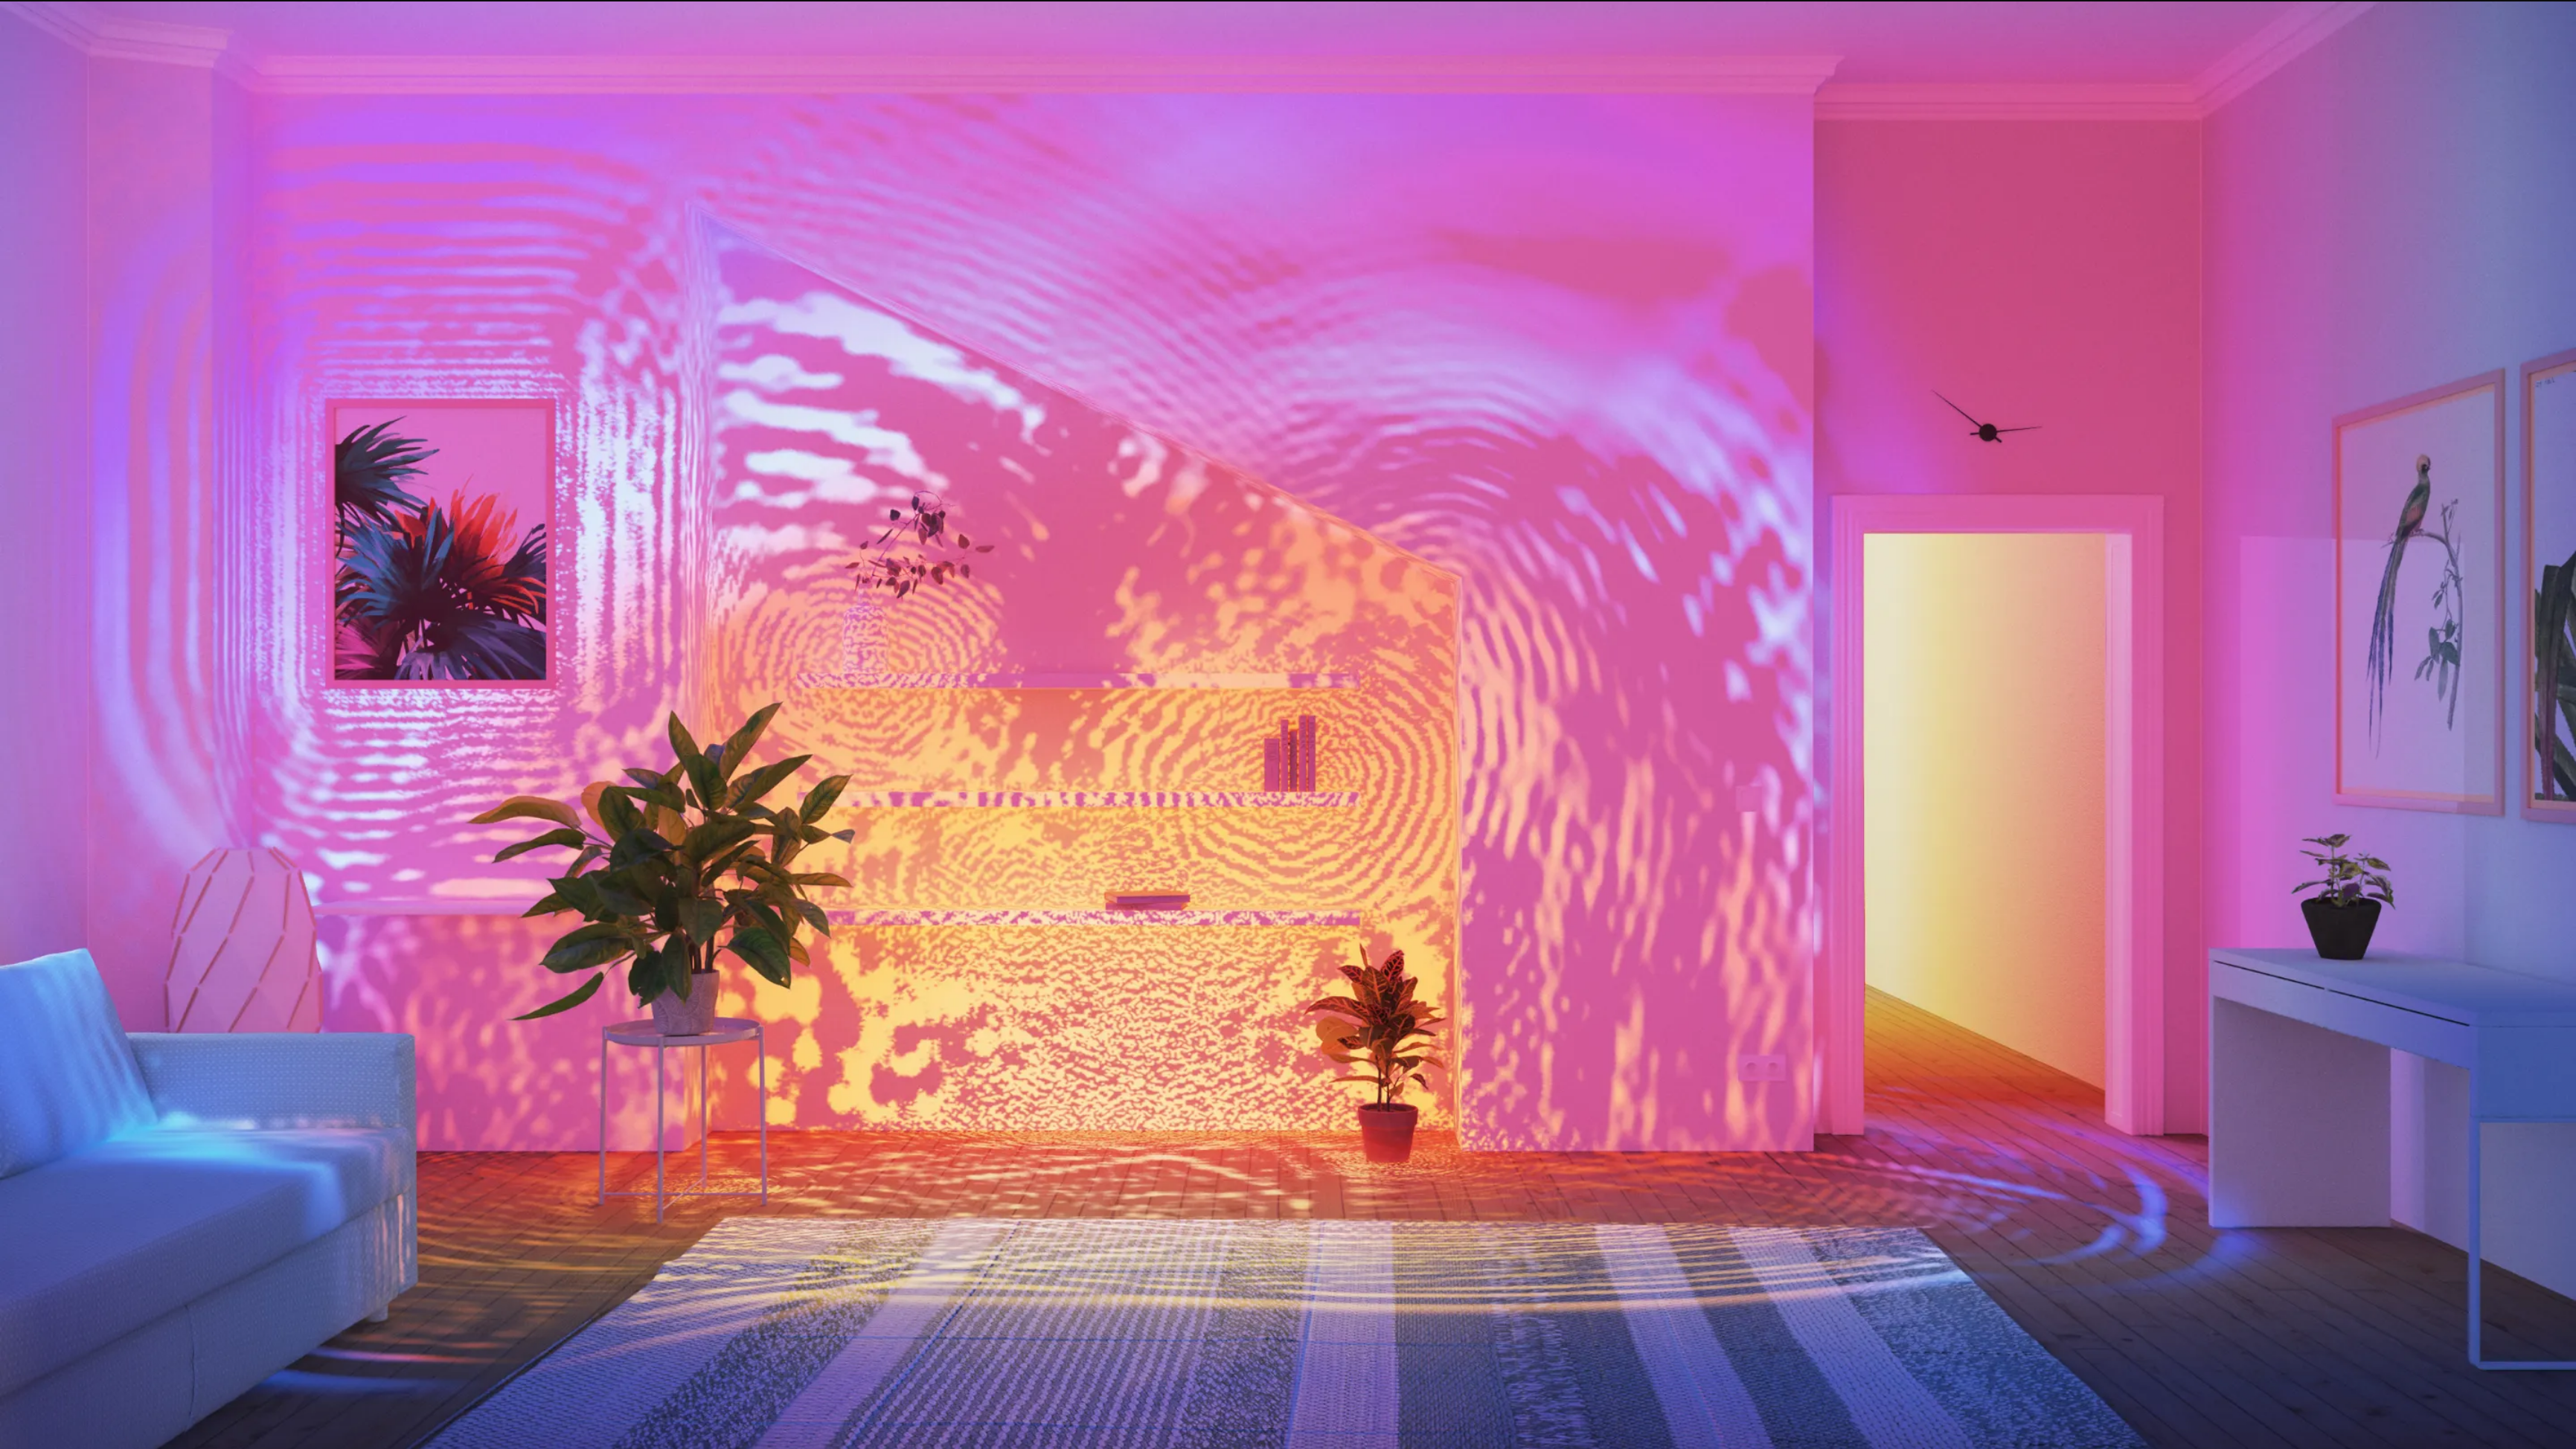 Pertenecer a colonia desagradable El diseño experimental en espacios: realidad virtual en casa | ACIS